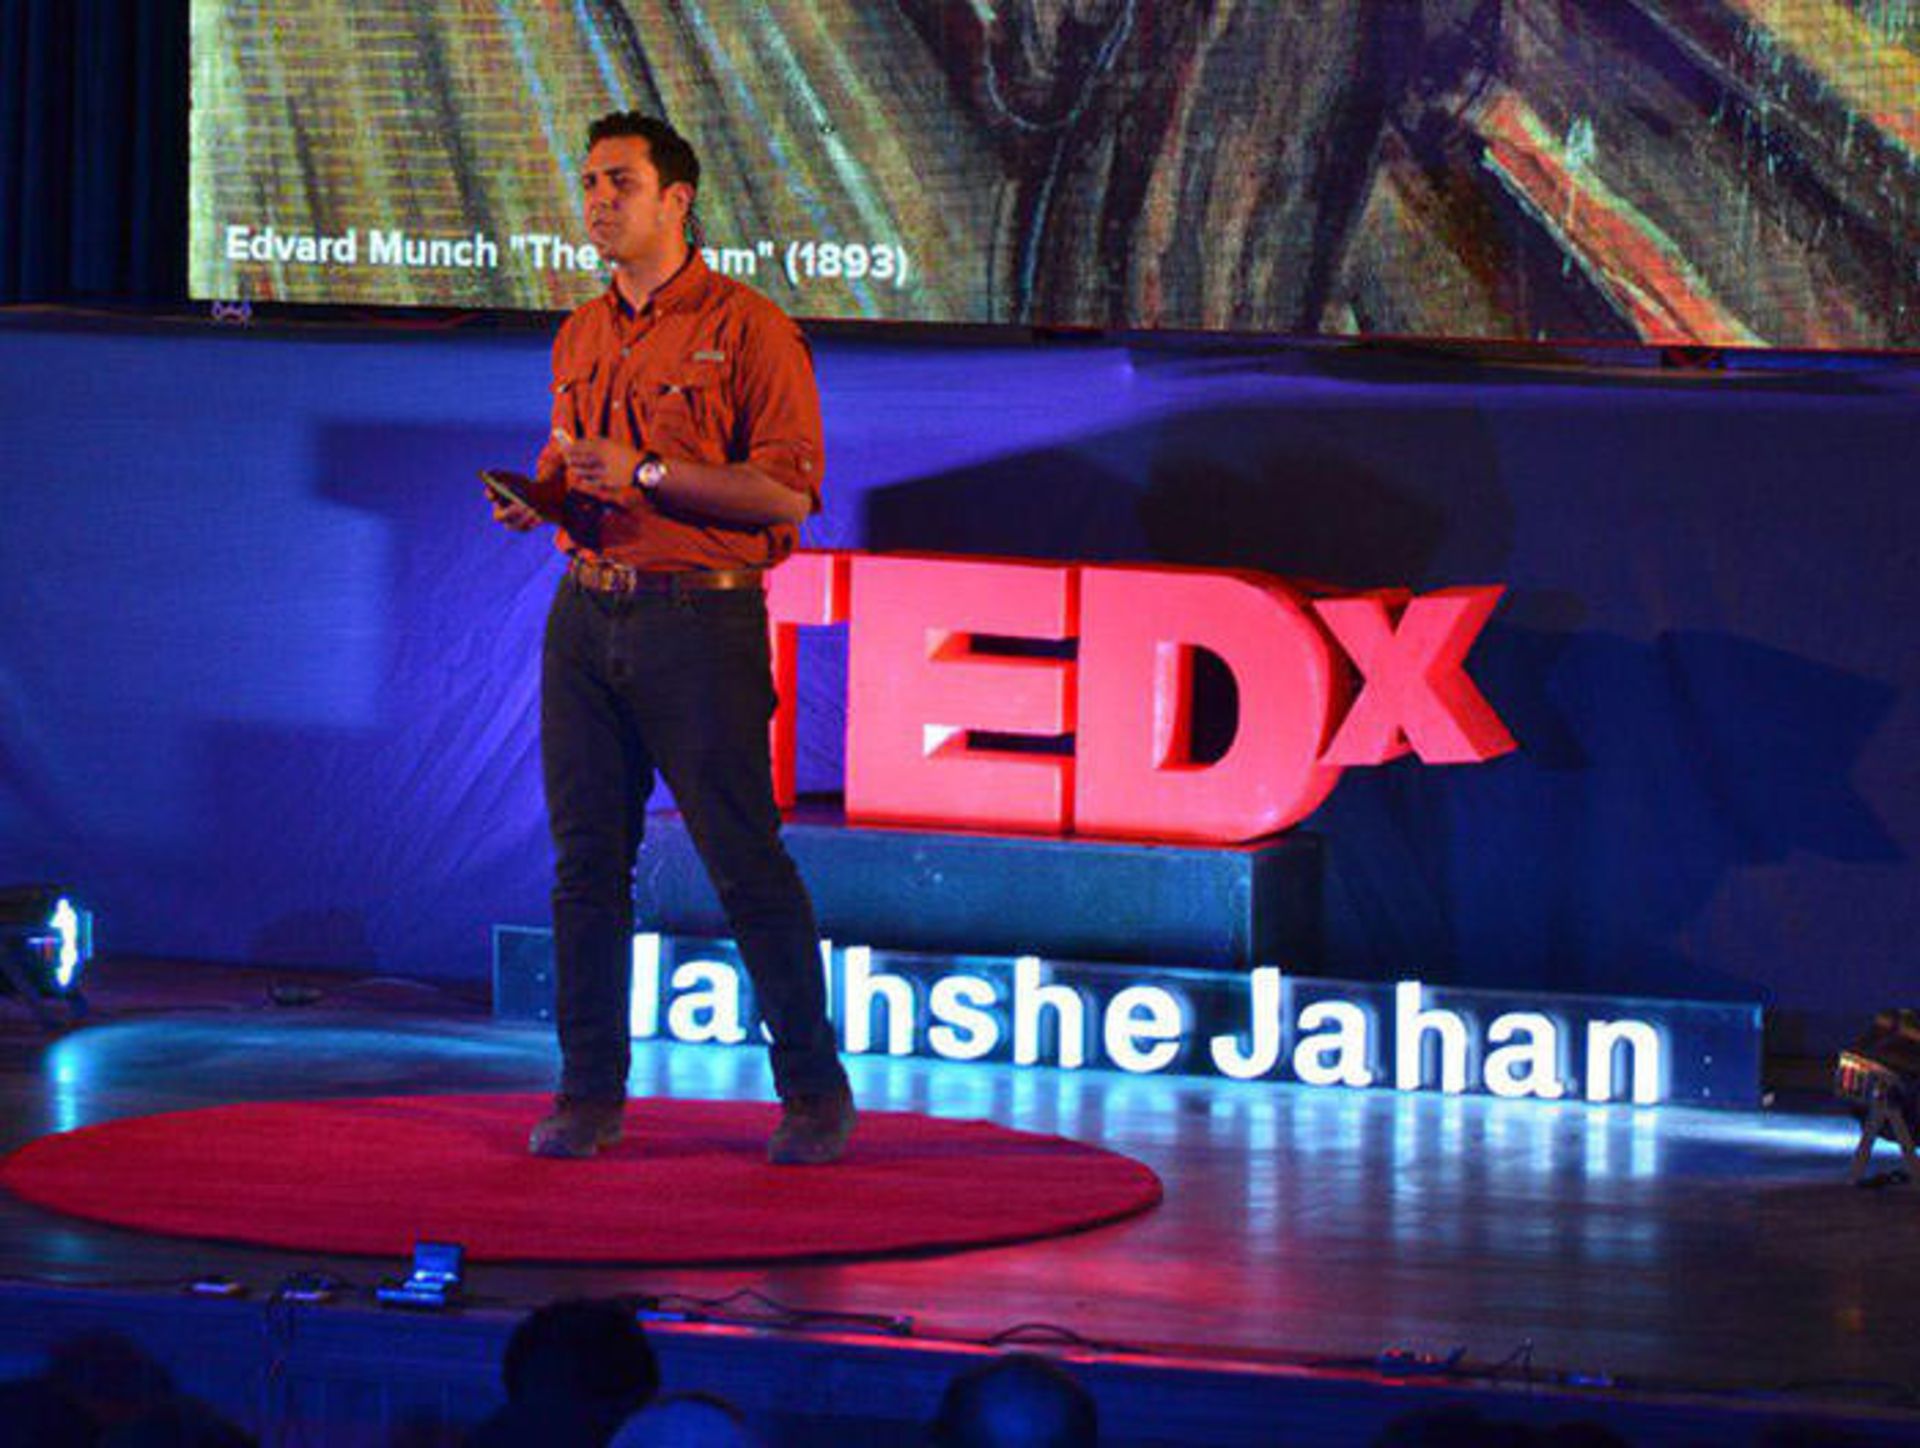 مرجع متخصصين ايران تدكس نقش جهان / Tedx